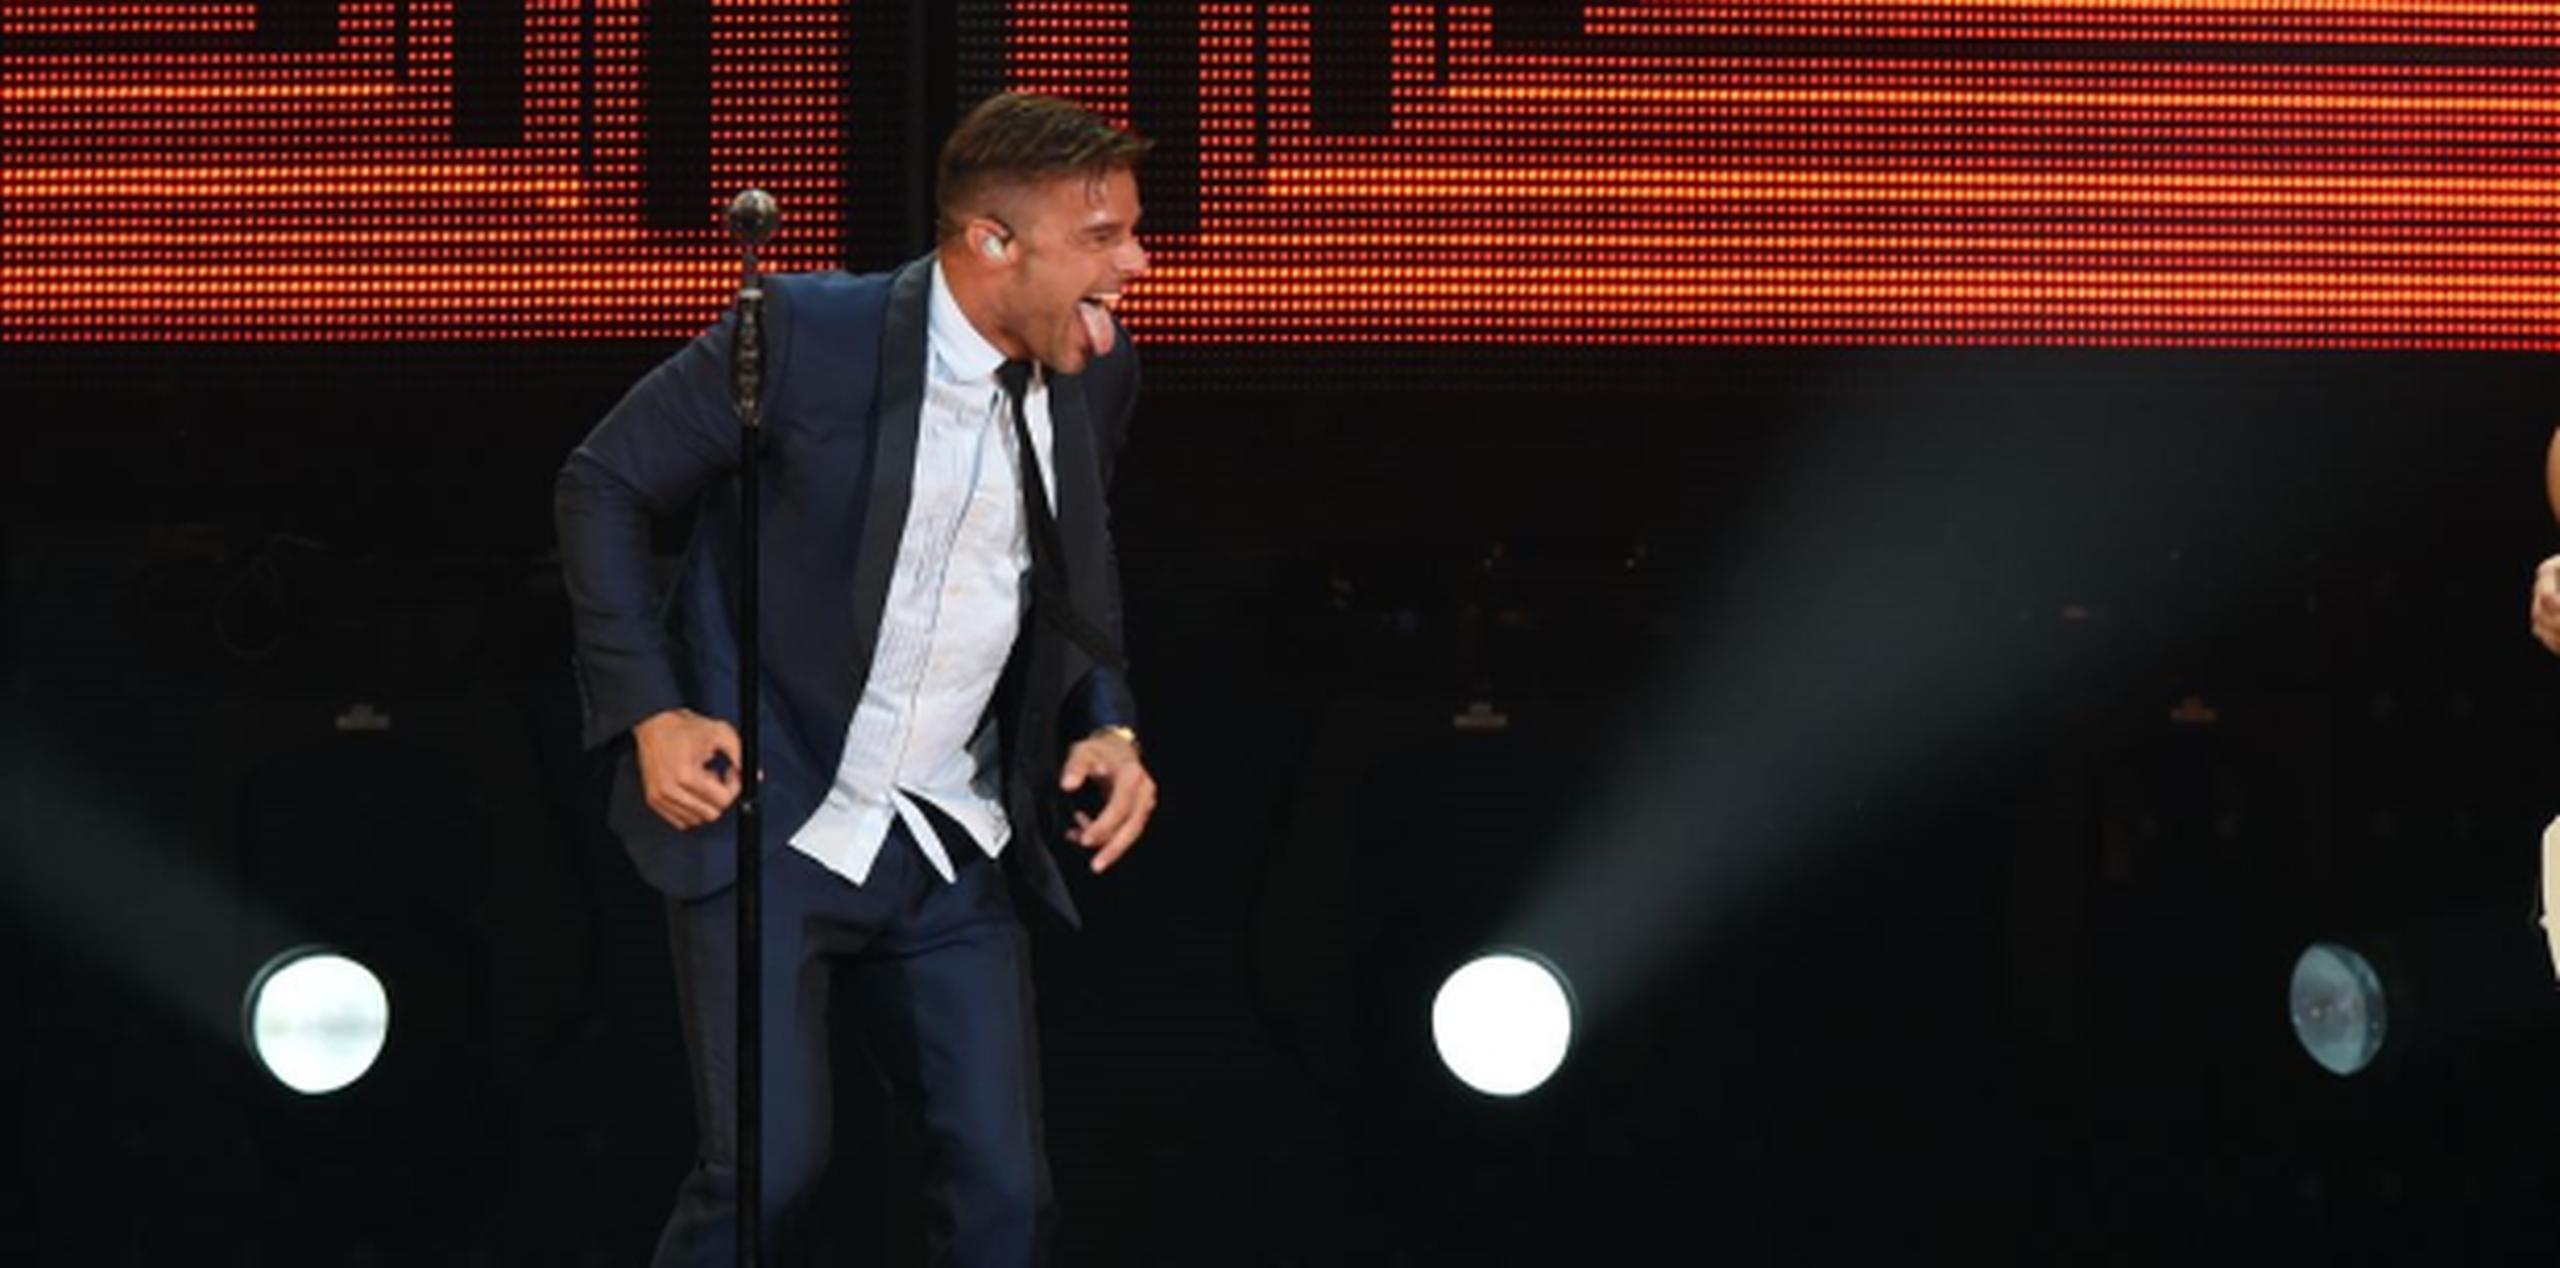 Entre los boricuas con mayor número de nominaciones se encuentran Ricky Martin, Marc Anthony y Víctor Manuelle. (andre.kang@gfrmedia.com)